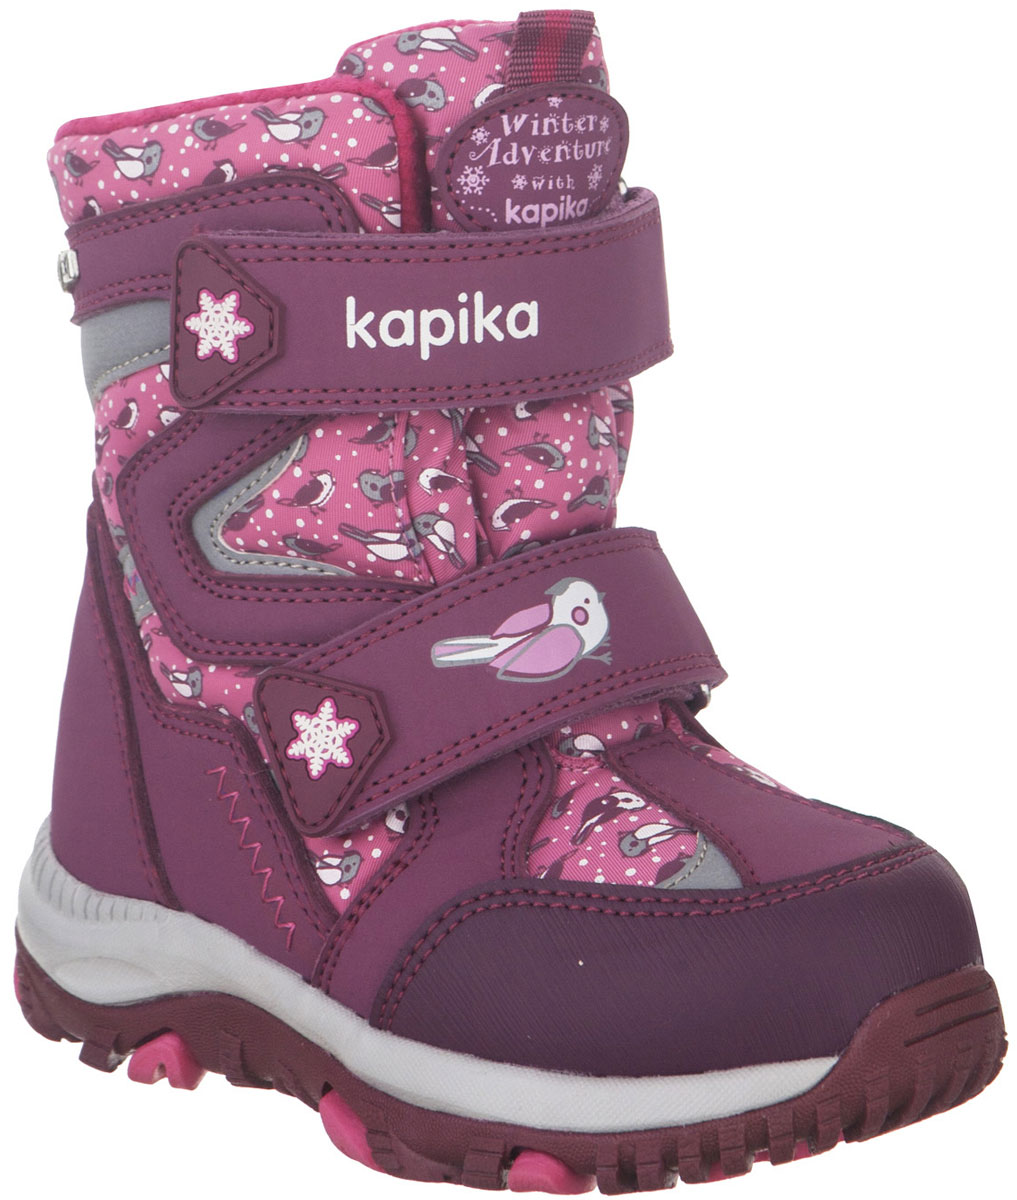 Ботинки для девочки Kapika, цвет: фиолетовый, розовый. 41222-2. Размер 23